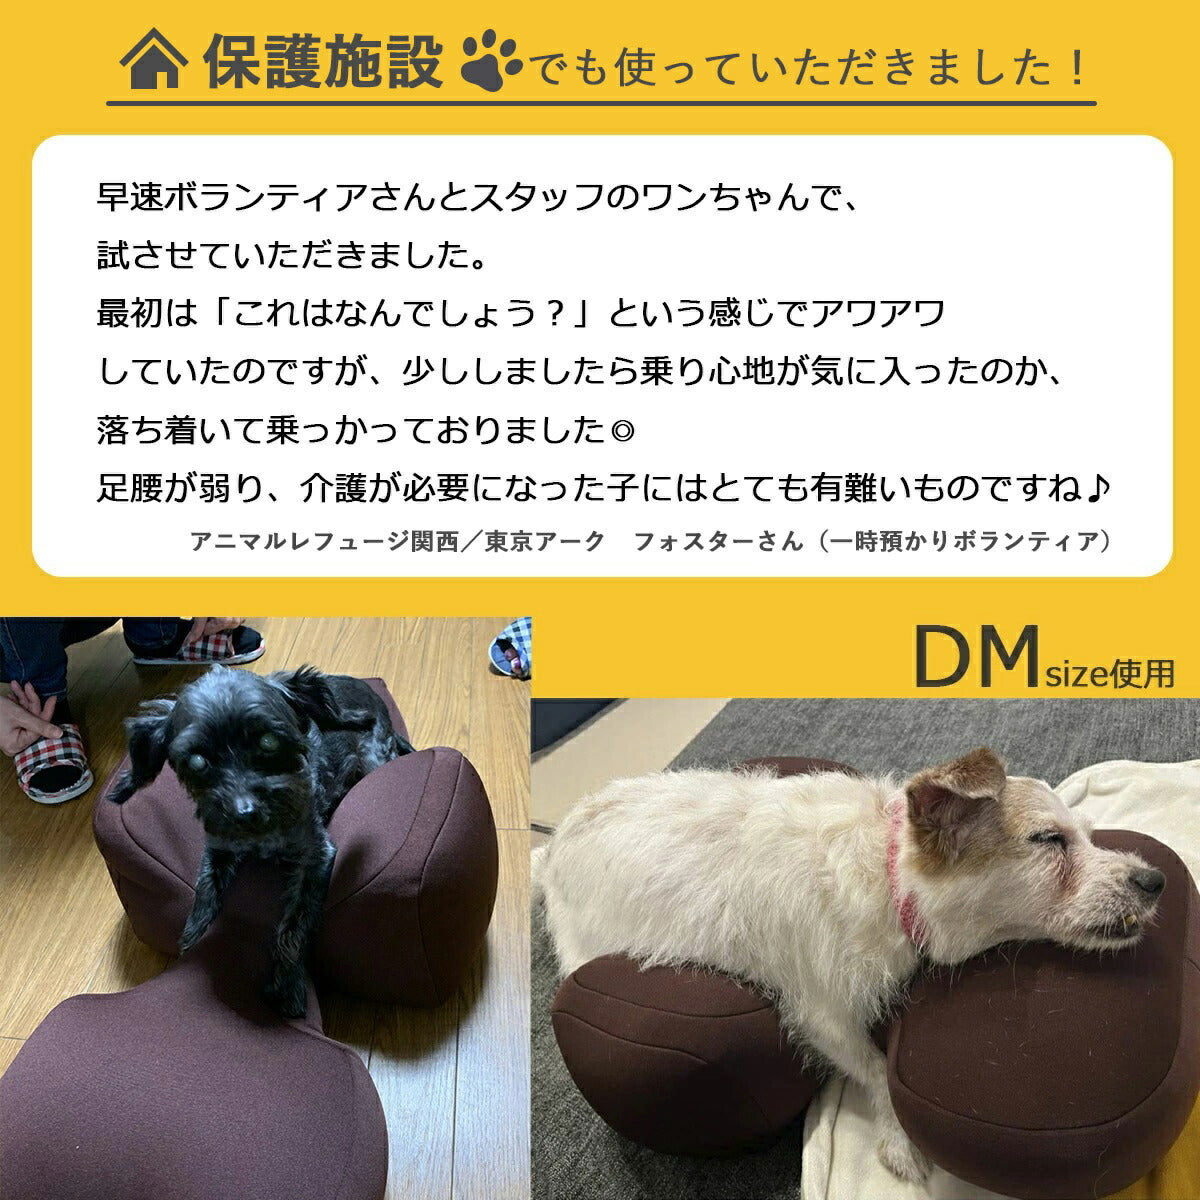 リラクッション ペット DM ブルー OneAid 犬用 介護 介護用品 ベッド